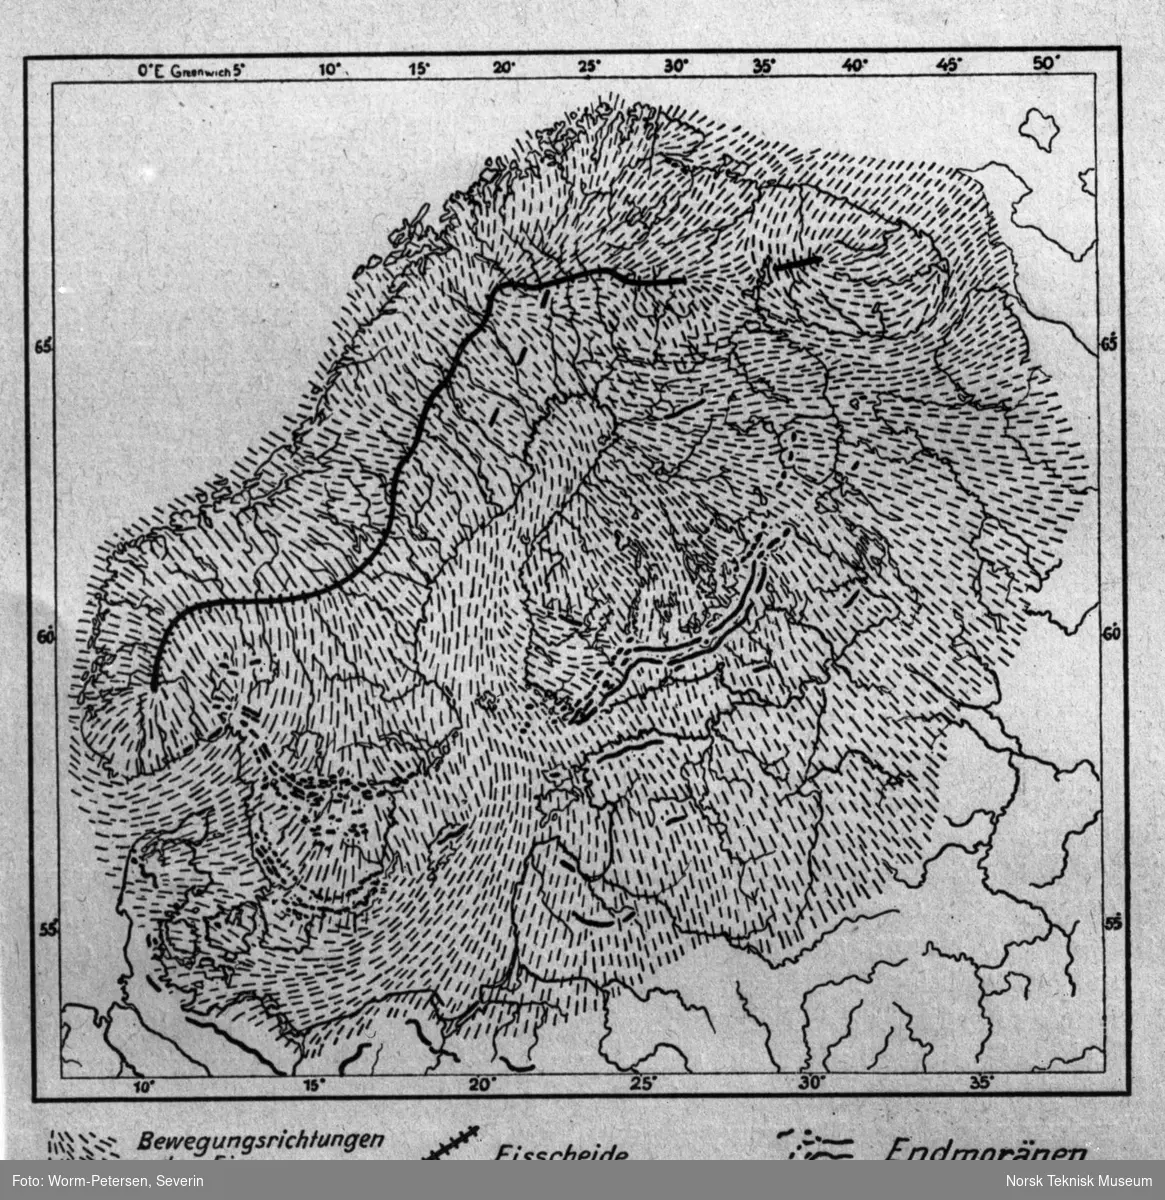 Geologisk kart over isbreer og morener over Skandinavia